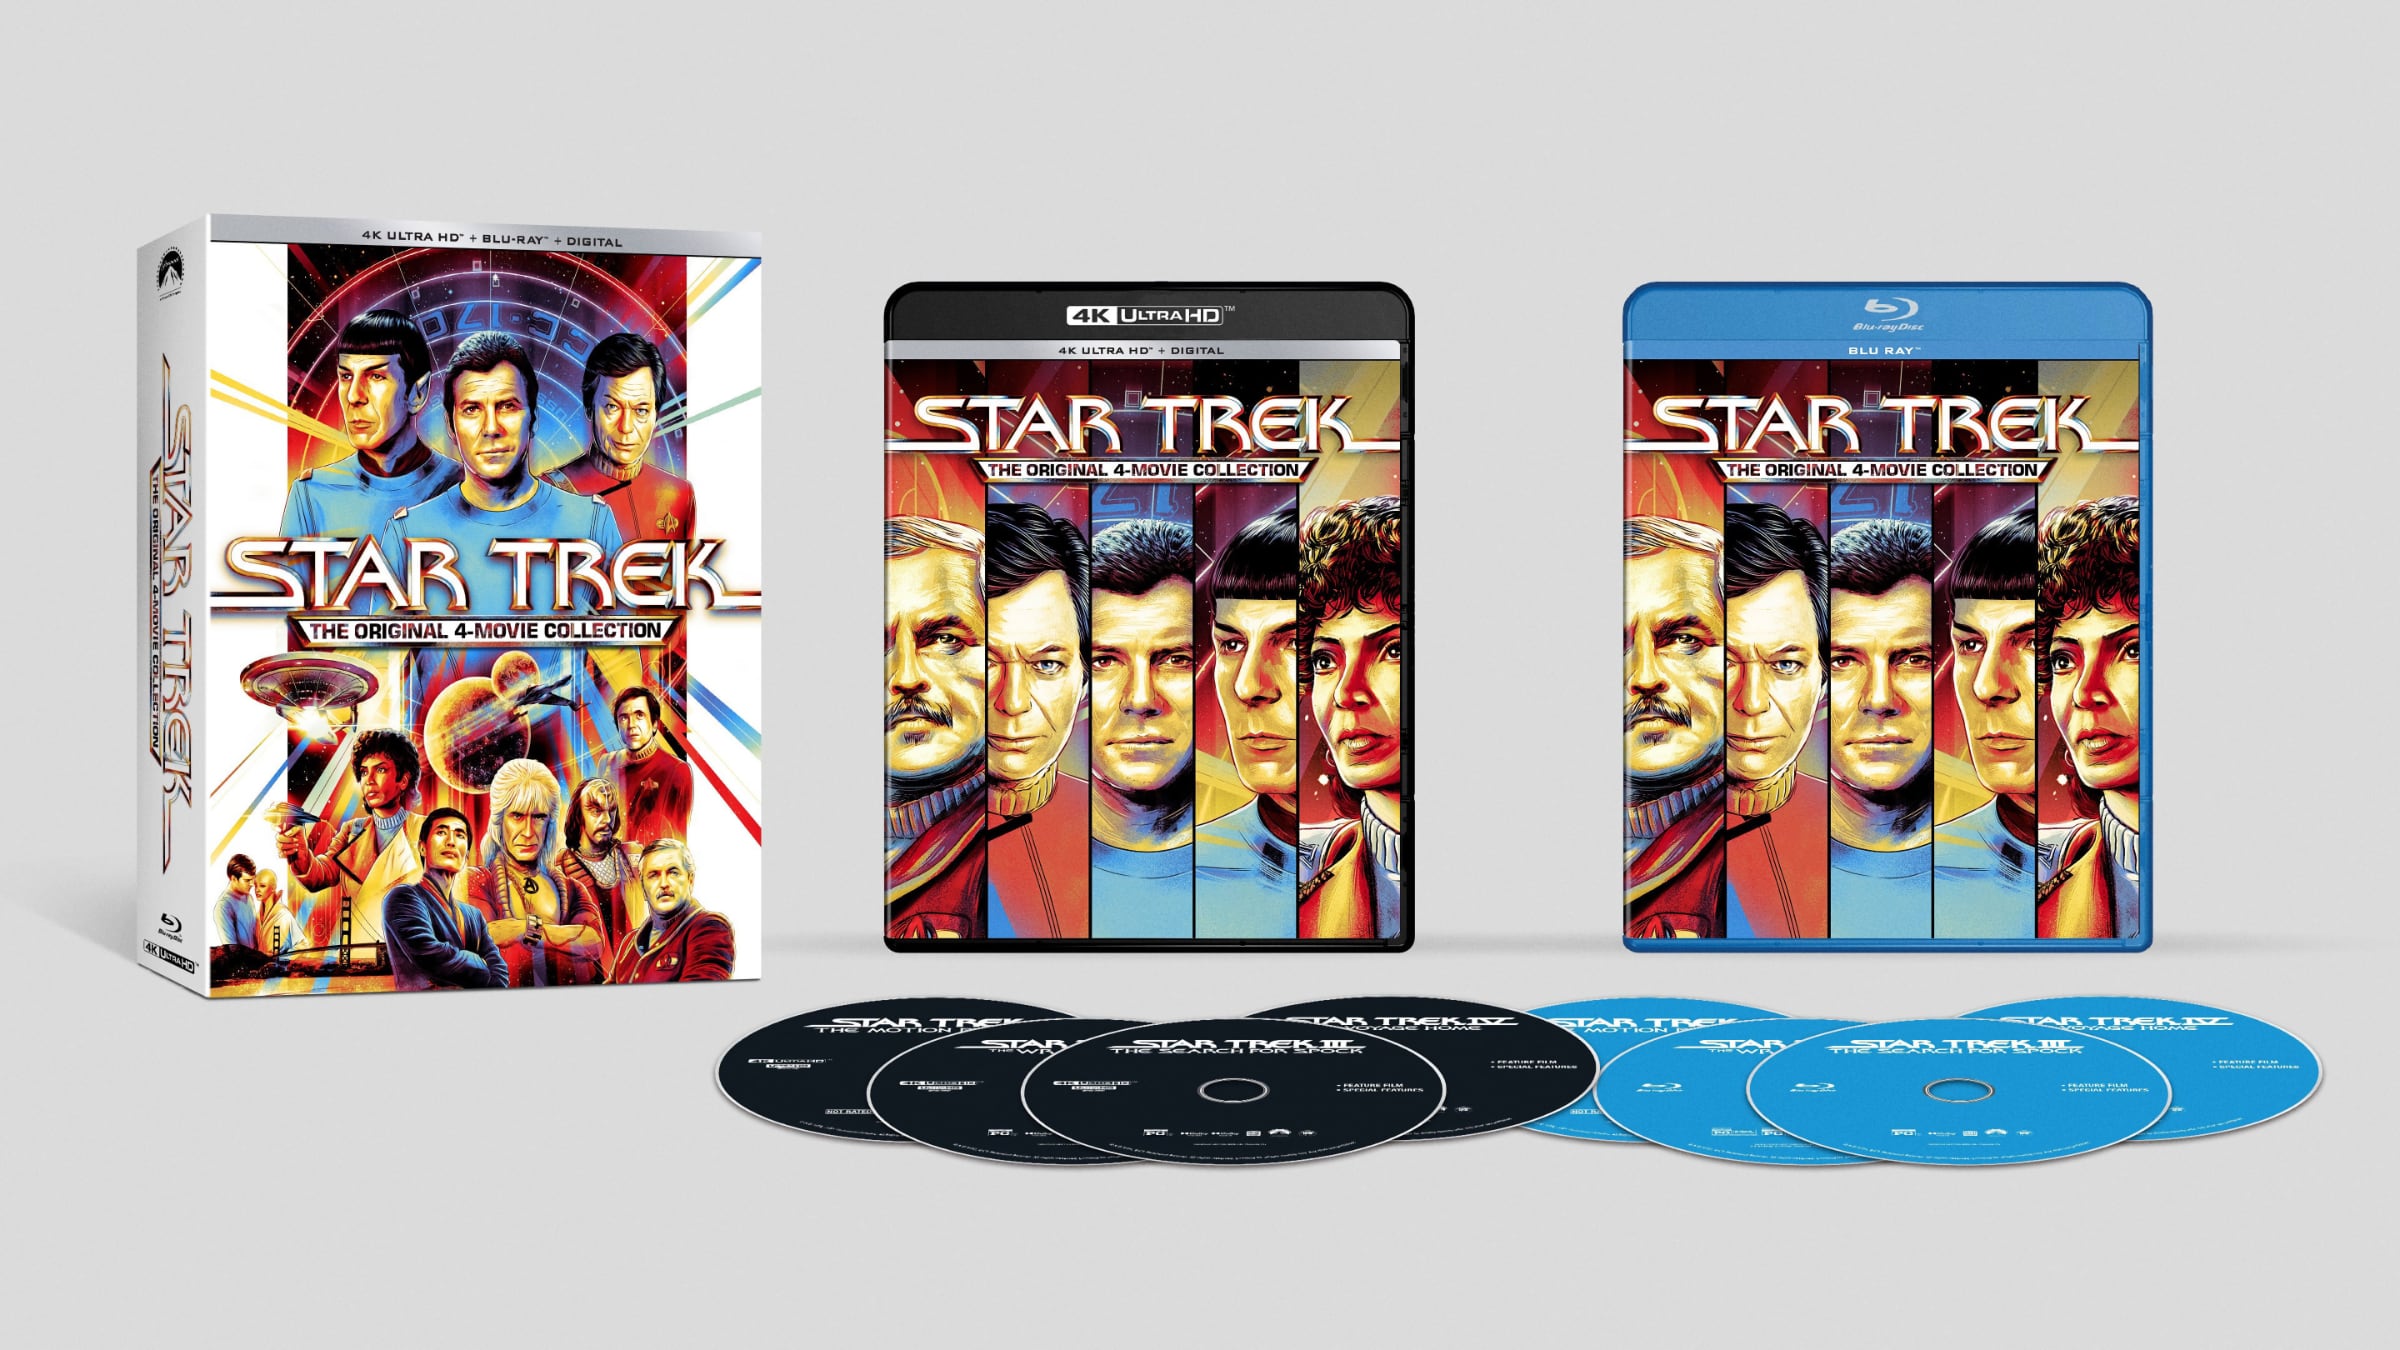 Paramount: Original four 'Star Trek' movies coming to UHD Blu-ray